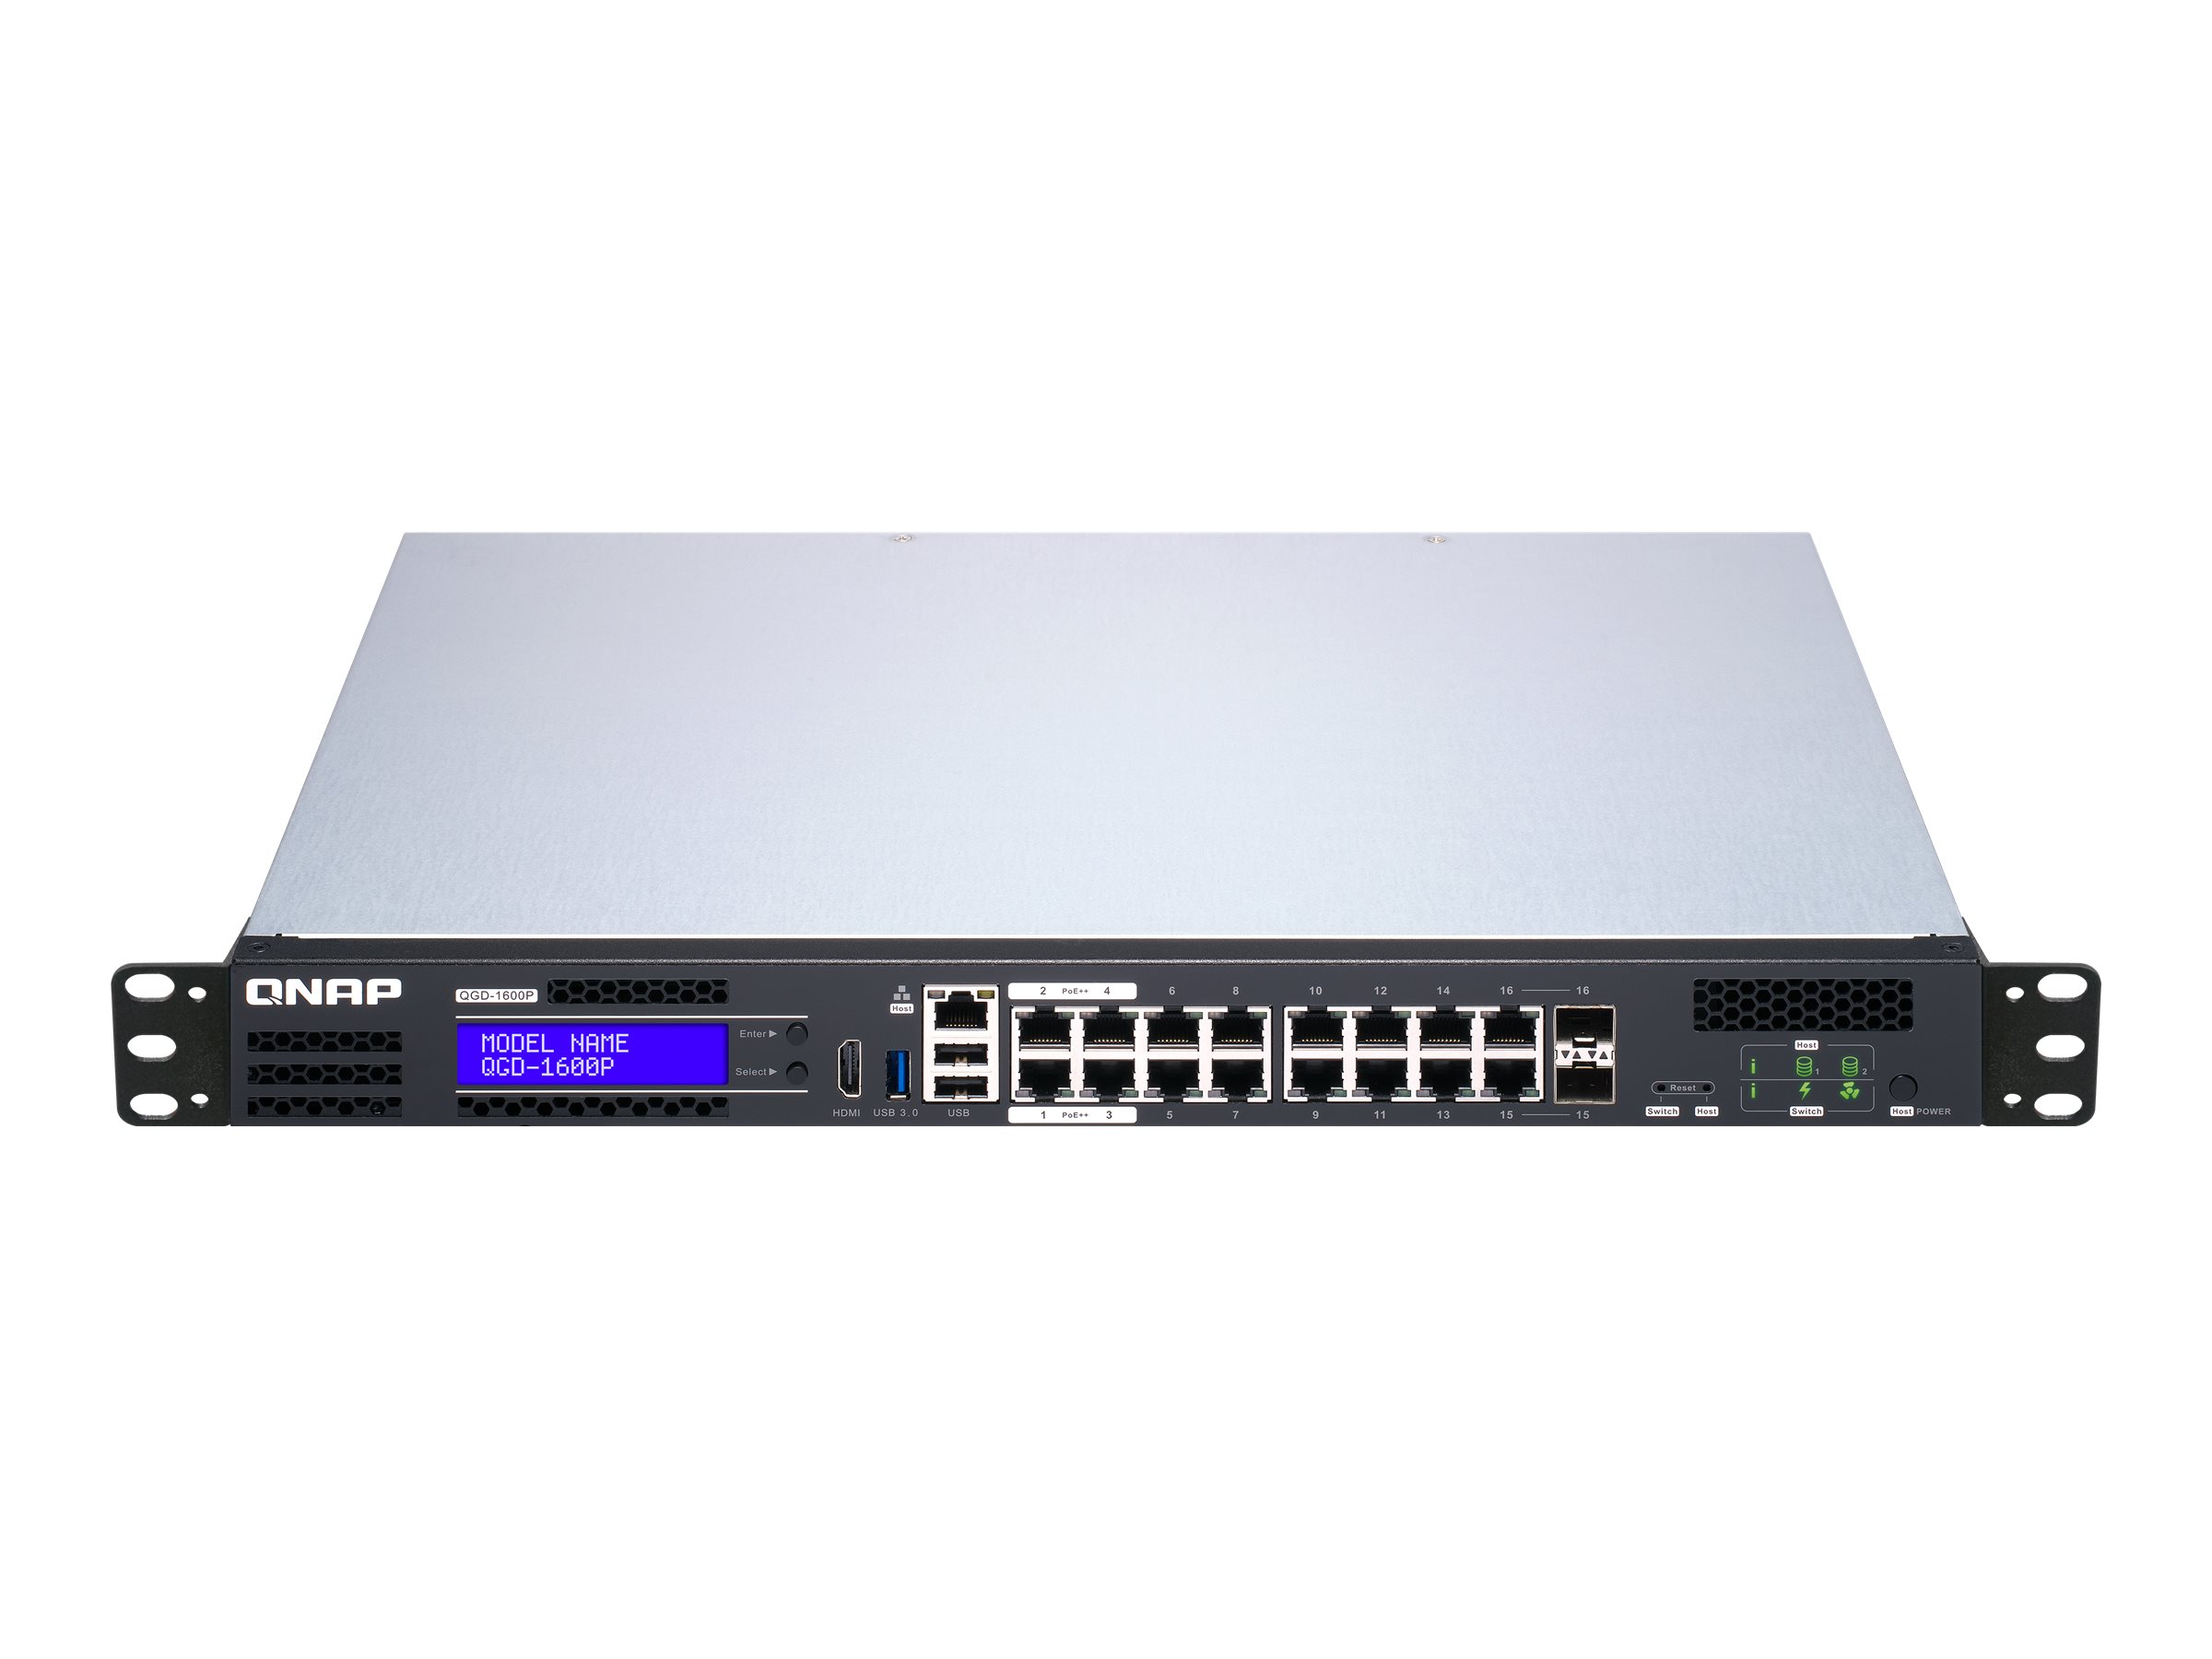 QNAP QGD-1600P - Commutateur - intelligent - 4 x 10/100/1000 (PoE++) + 10 x 10/100/1000 (PoE+) + 2 x combo Gigabit SFP (PoE+) - Montable sur rack - PoE++ (370 W) - QGD-1600P-4G - Concentrateurs et commutateurs gigabit